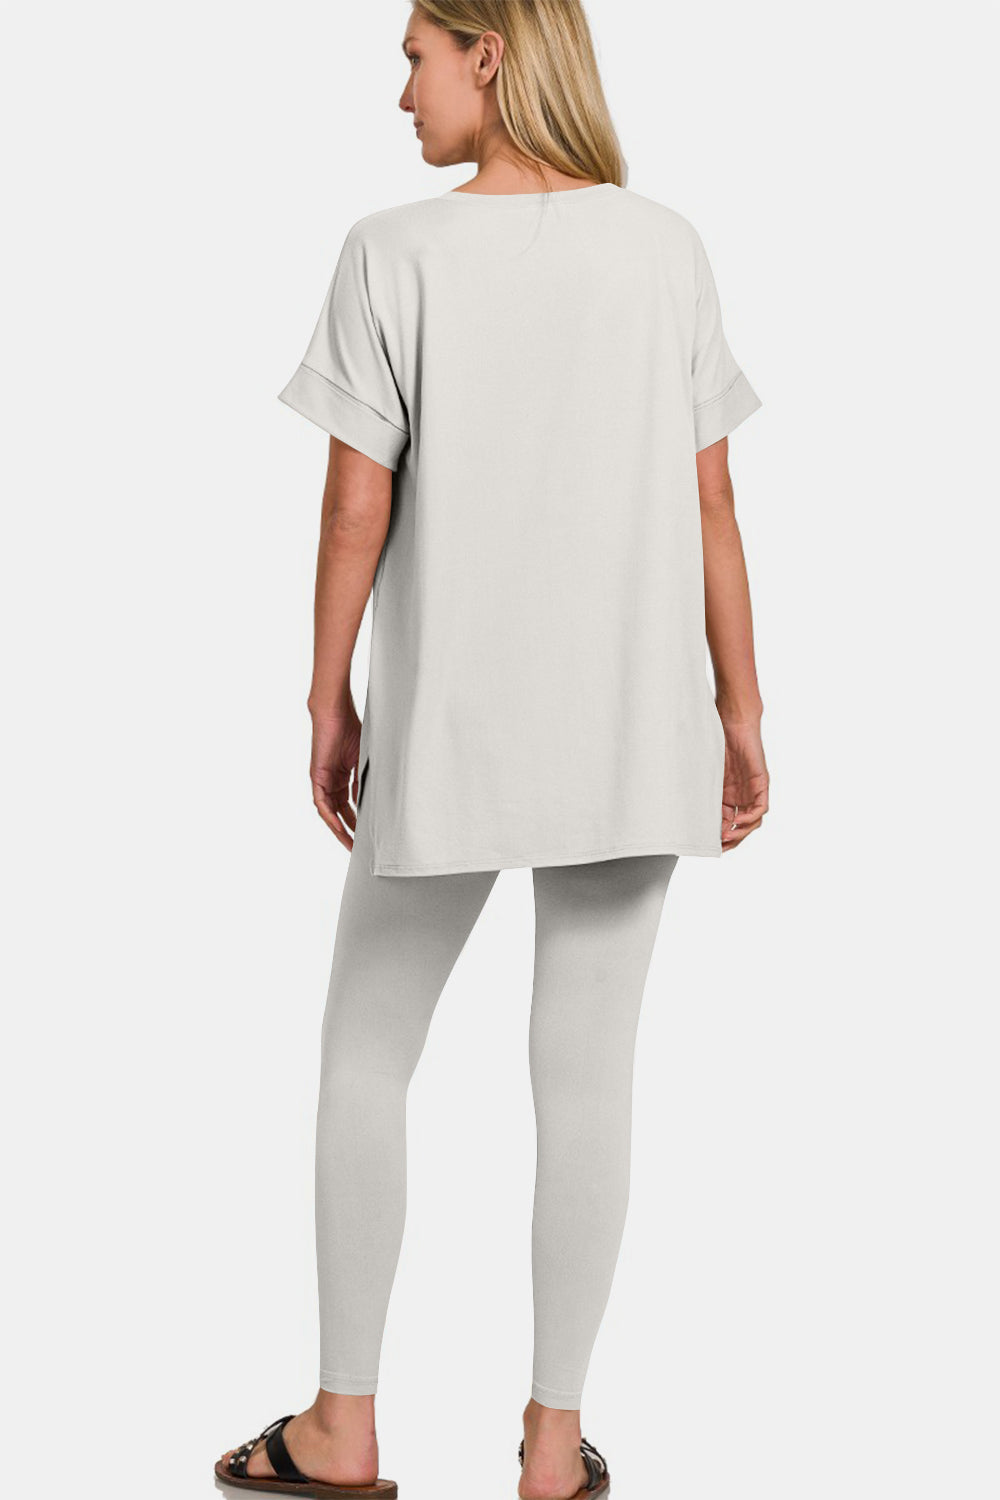 Zenana Light Cement V-Neck Rolled Short Sleeve T-Shirt and Leggings Lounge Set Trendsi